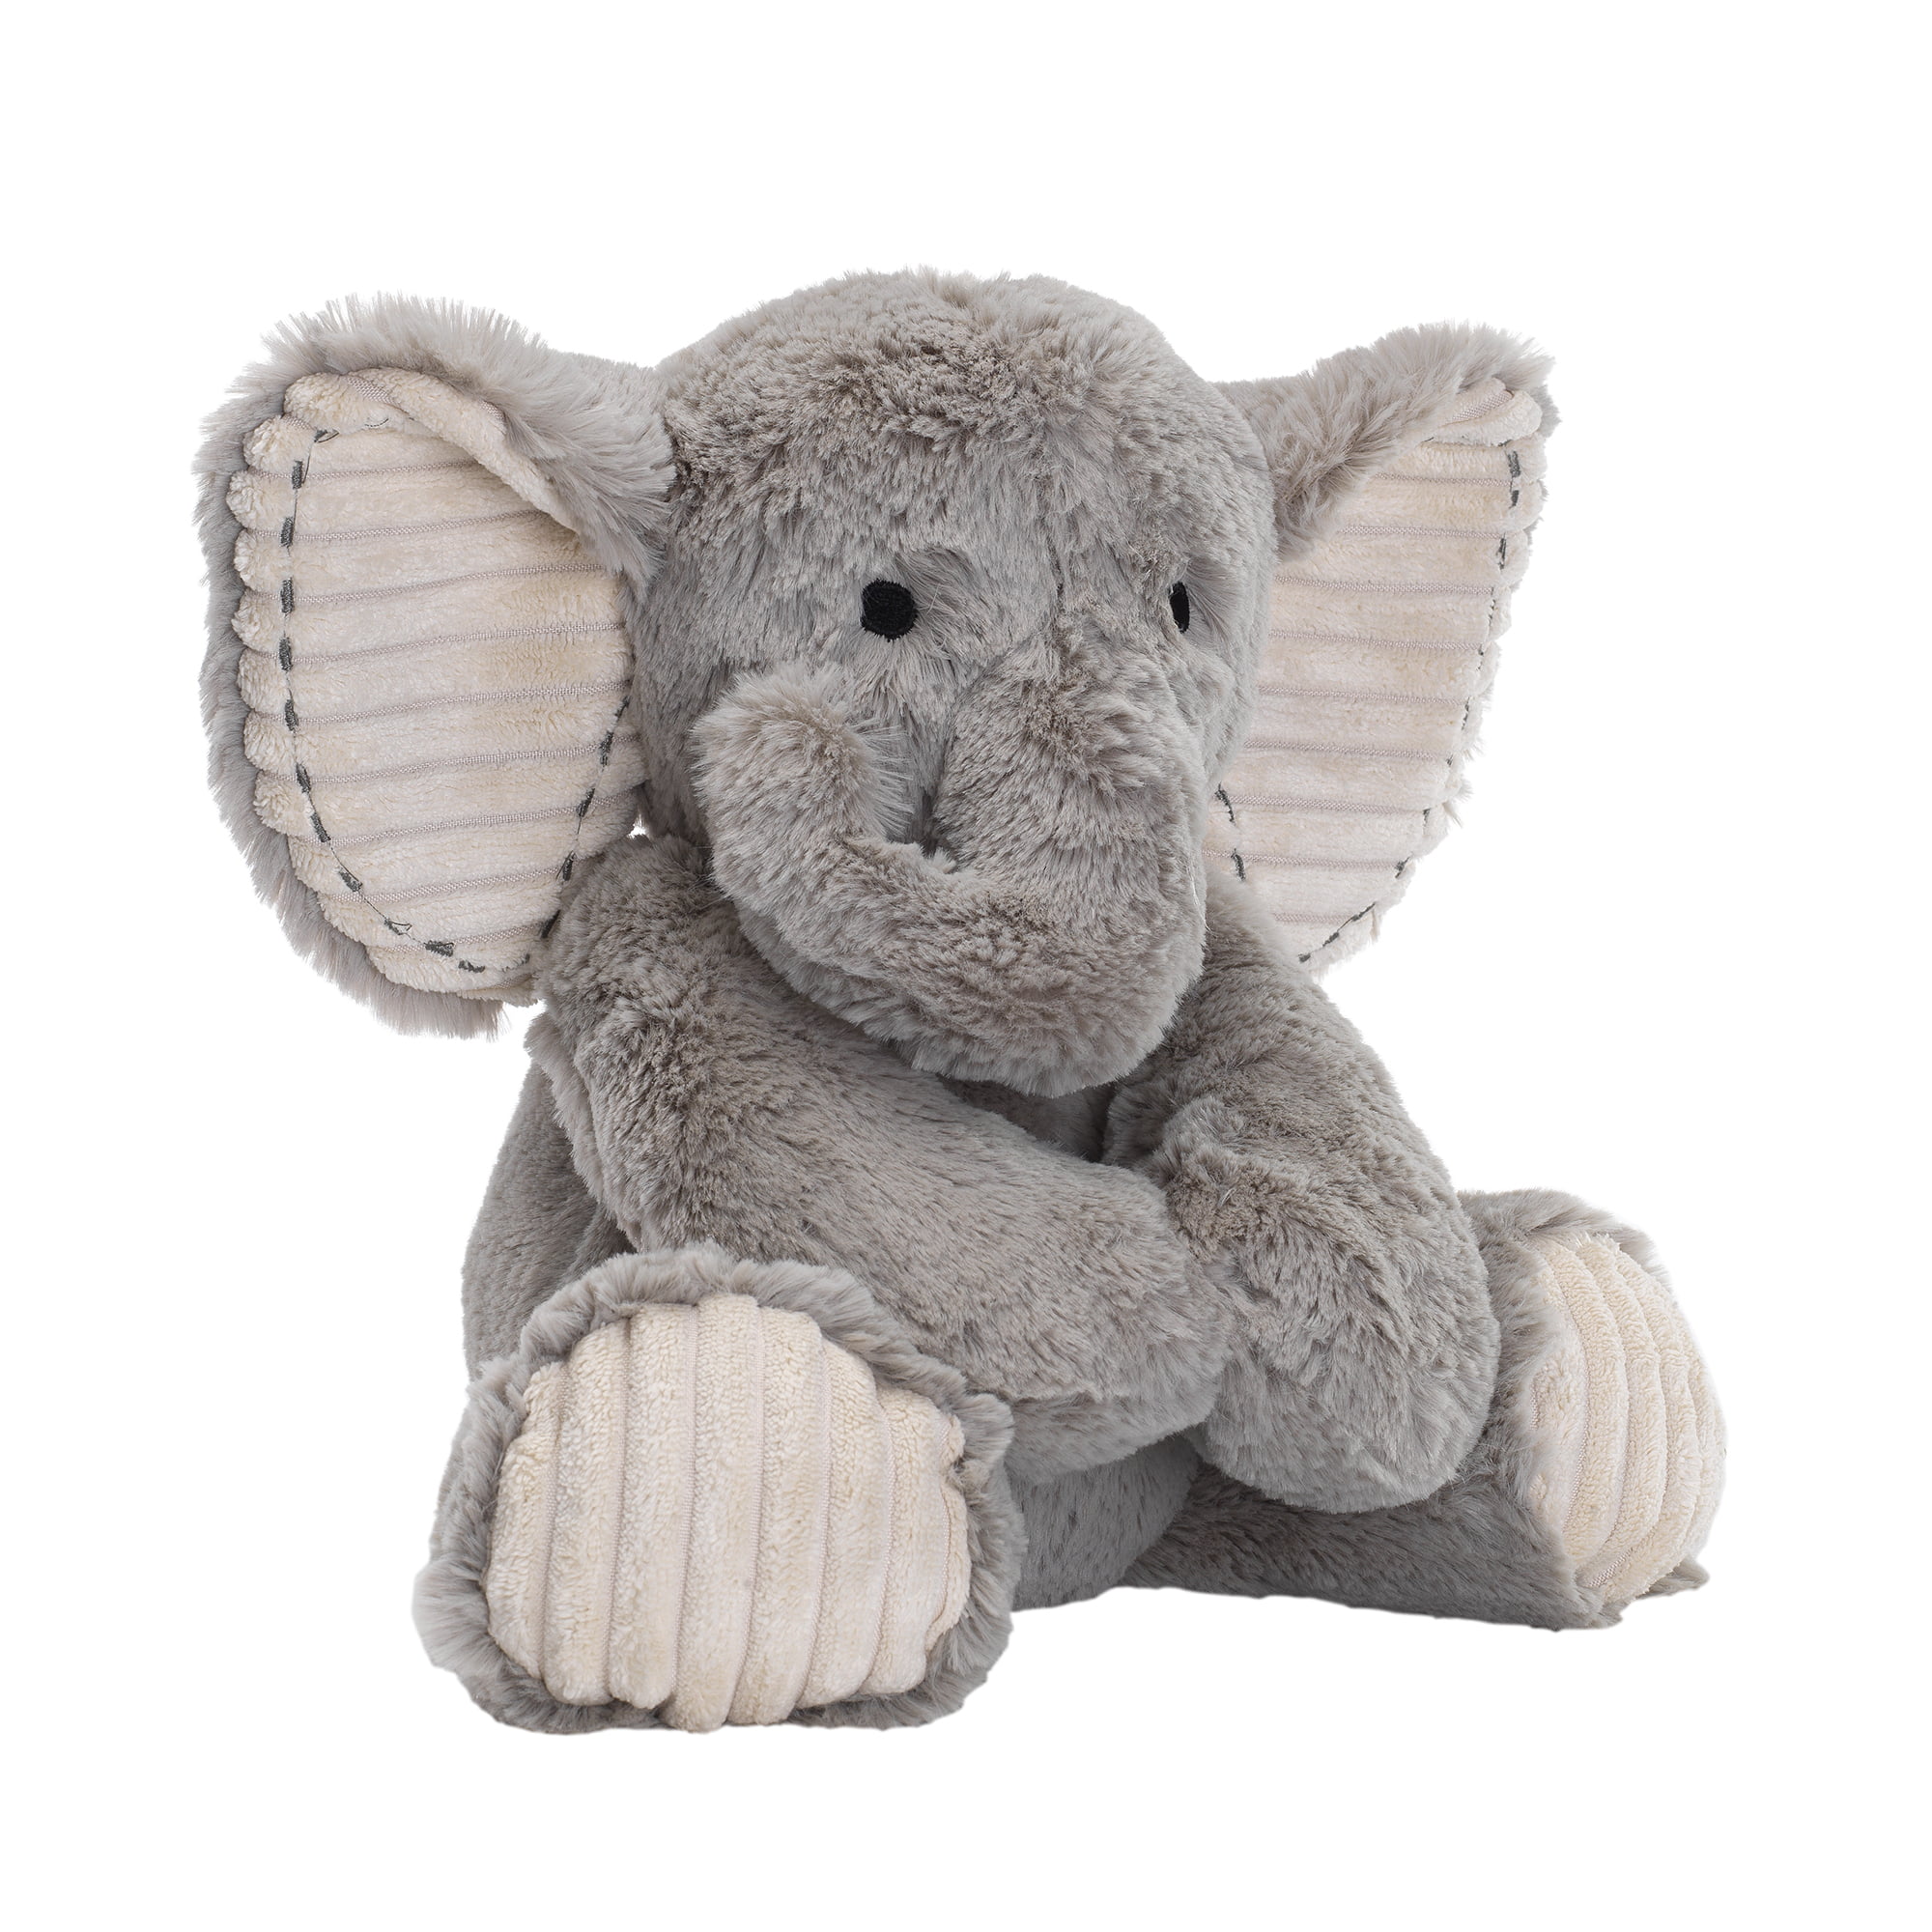 grey elephant stuffed animal